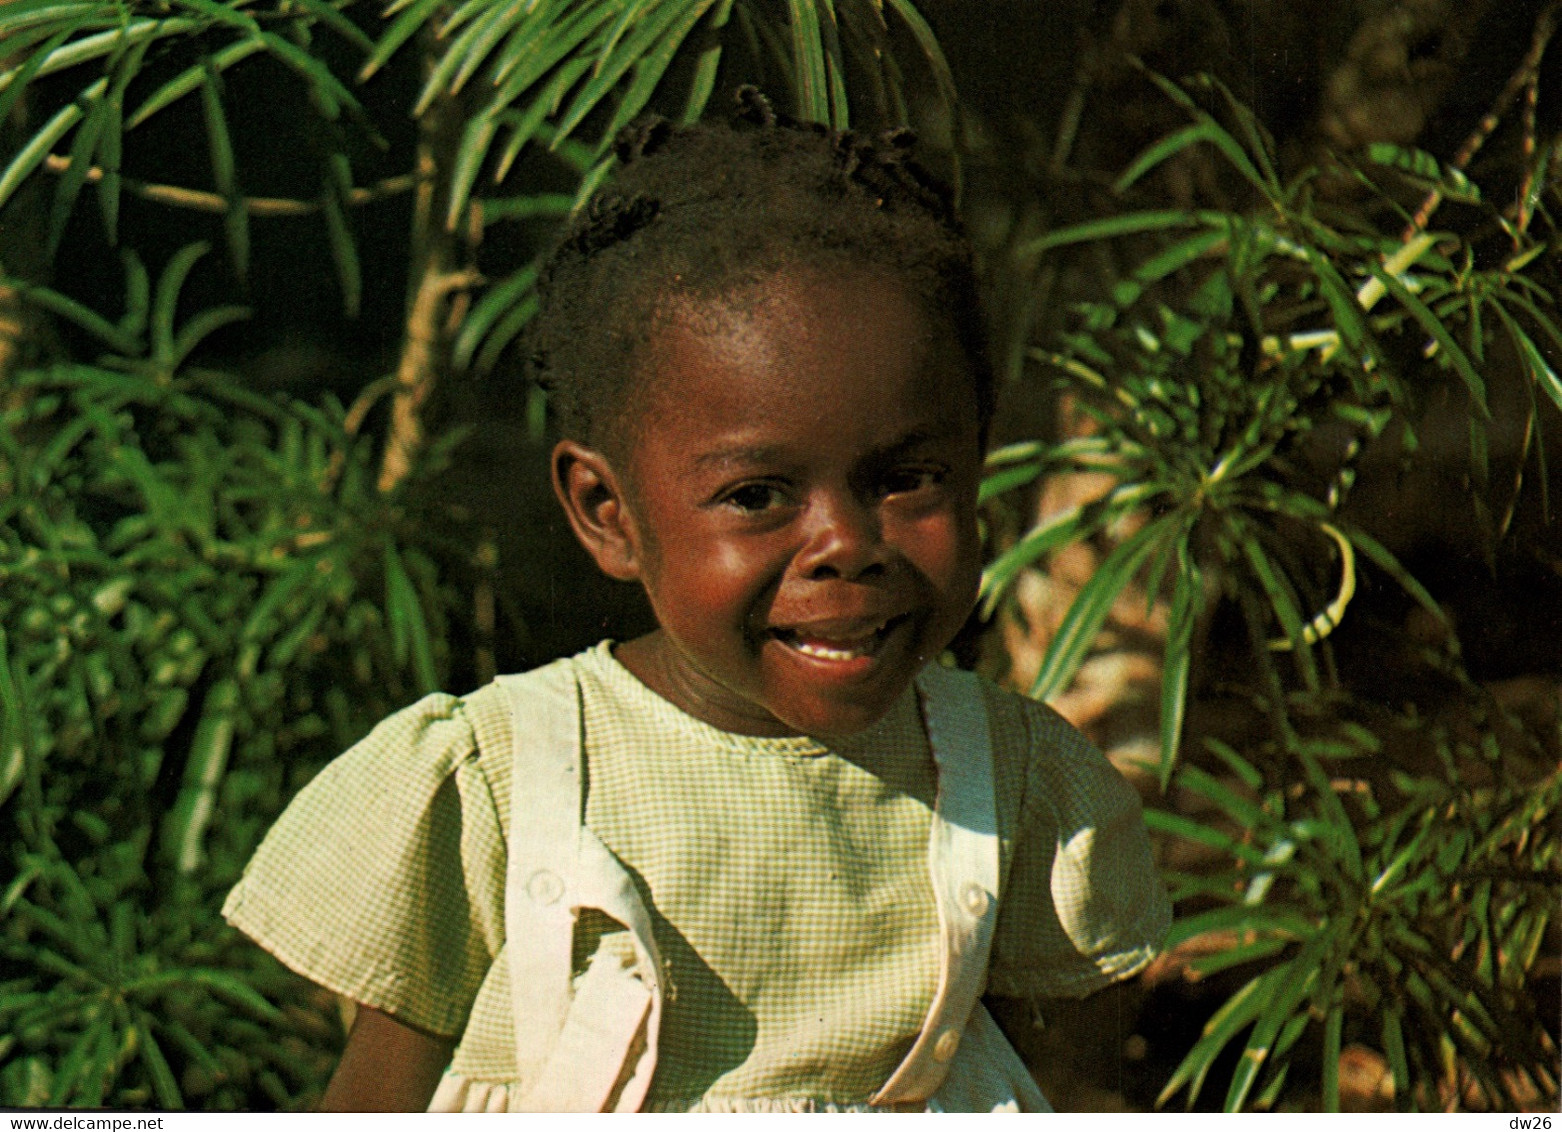 Afrique - Guinea Ecuatorial (Guinée Equatoriale) Sonrisa De Nina En Bata (sourire D'enfant) - Afrika